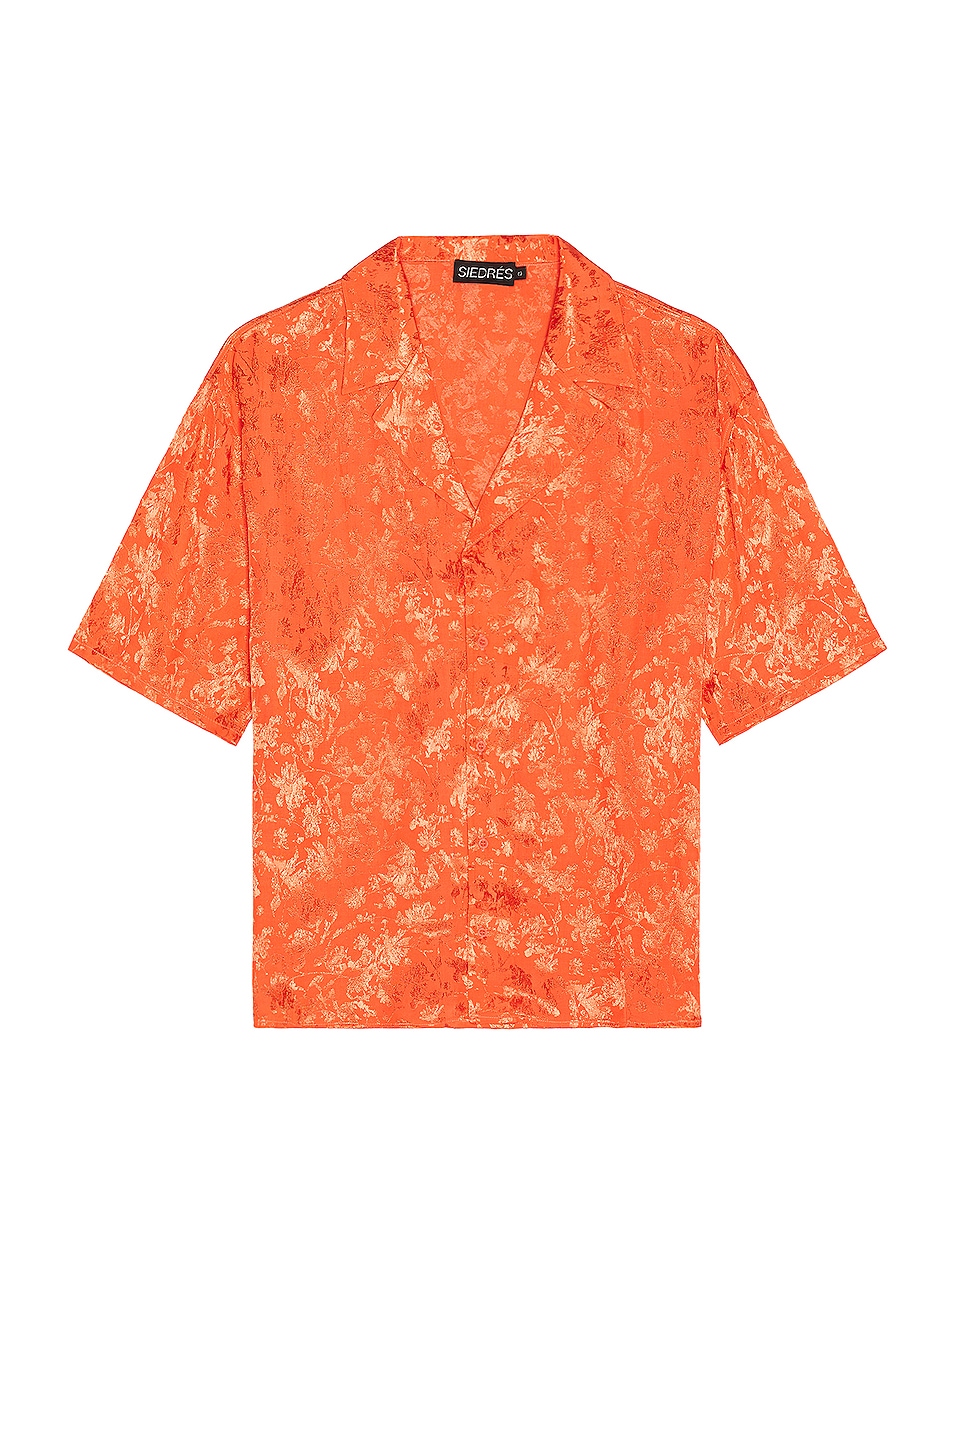 Image 1 of SIEDRES Resort Collar Jacquard Shirt in Orange